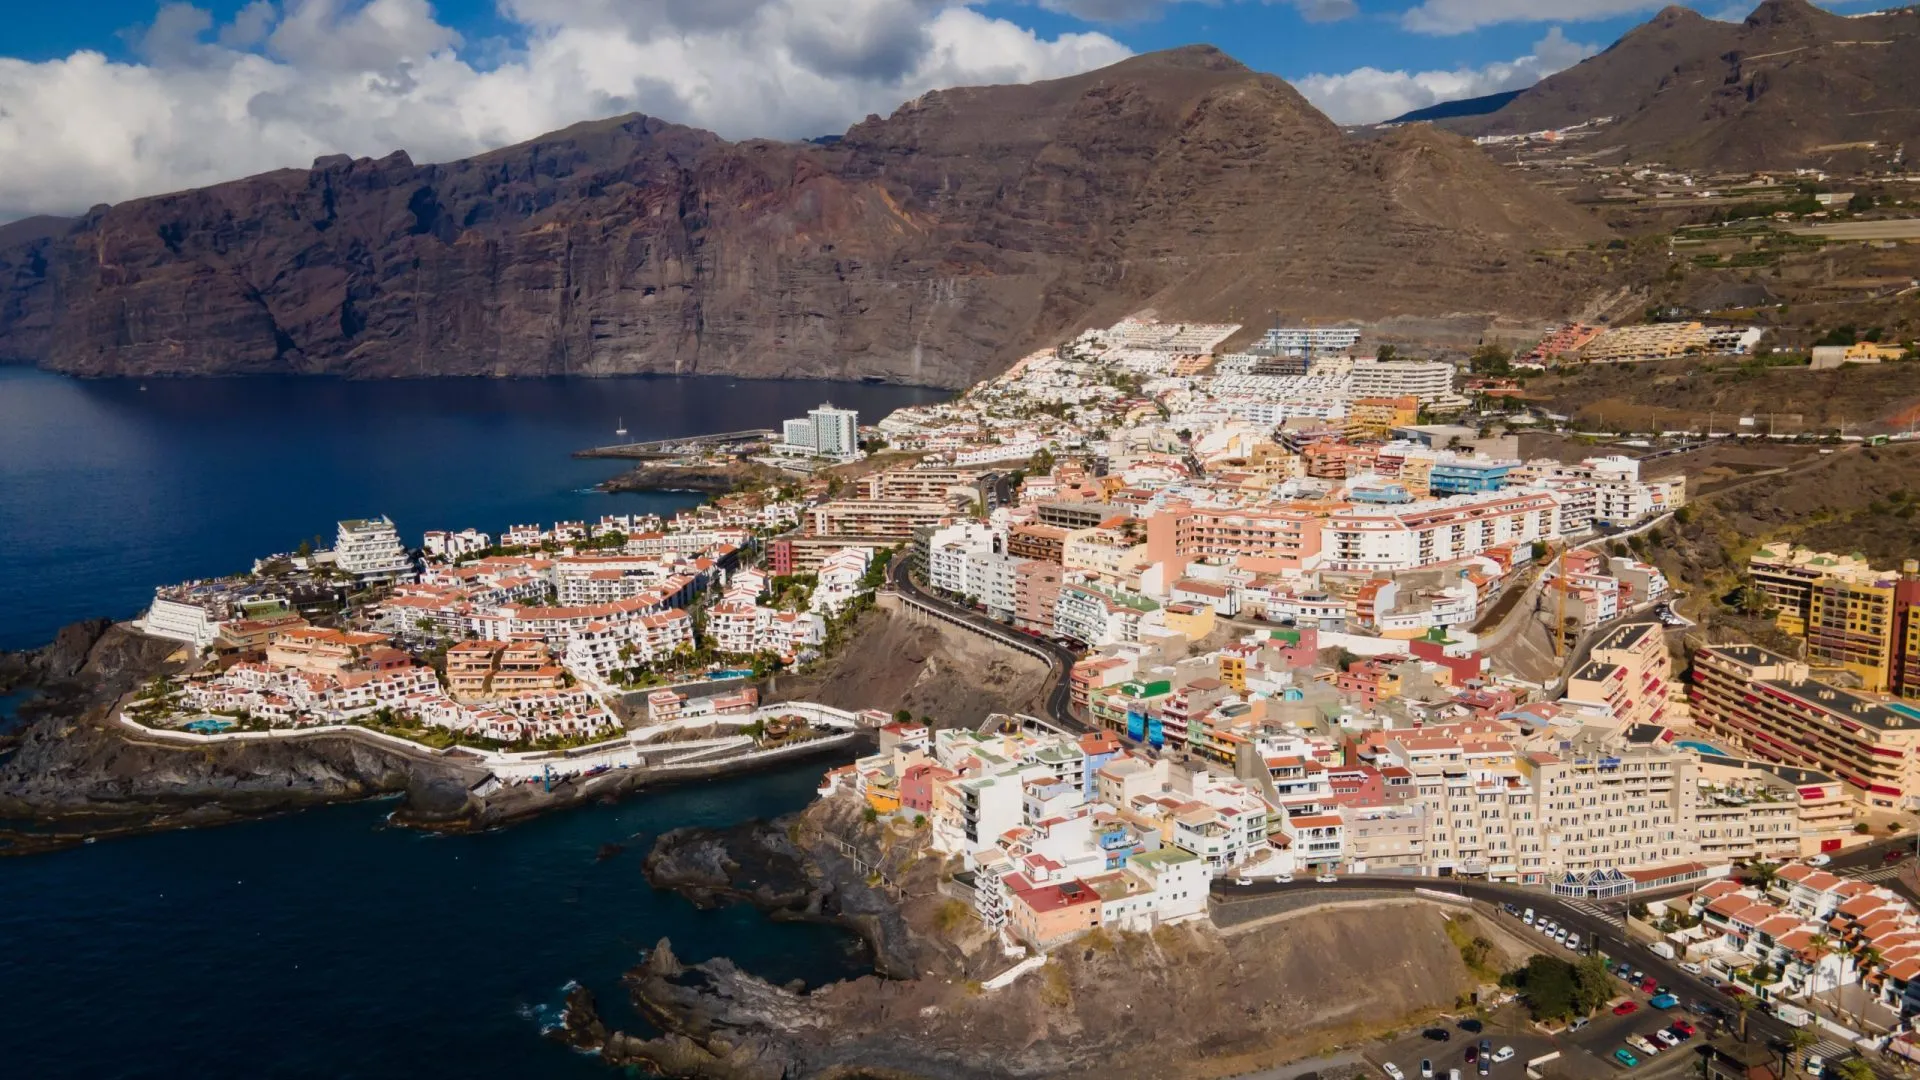 Puerto de Santiago ligger mellom Los Gigantes og Playa de la Arena på vestkysten av Tenerife.